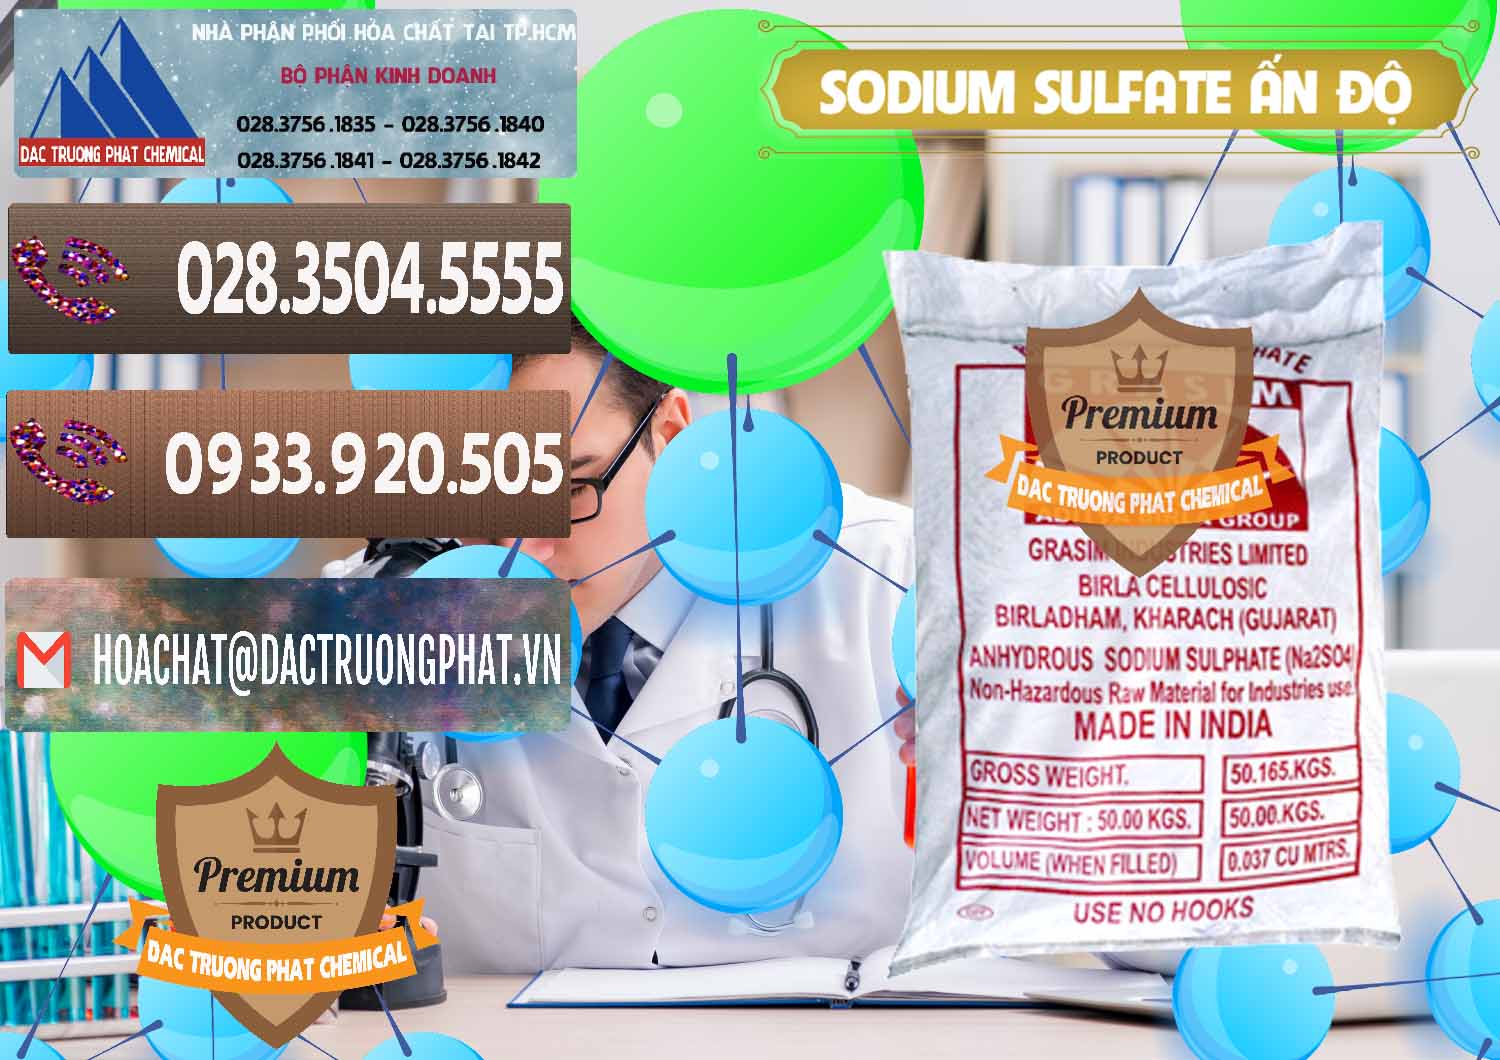 Nơi bán - cung cấp Sodium Sulphate - Muối Sunfat Na2SO4 Aditya Birla Grasim Ấn Độ India - 0462 - Cty chuyên cung cấp và kinh doanh hóa chất tại TP.HCM - hoachatviet.net